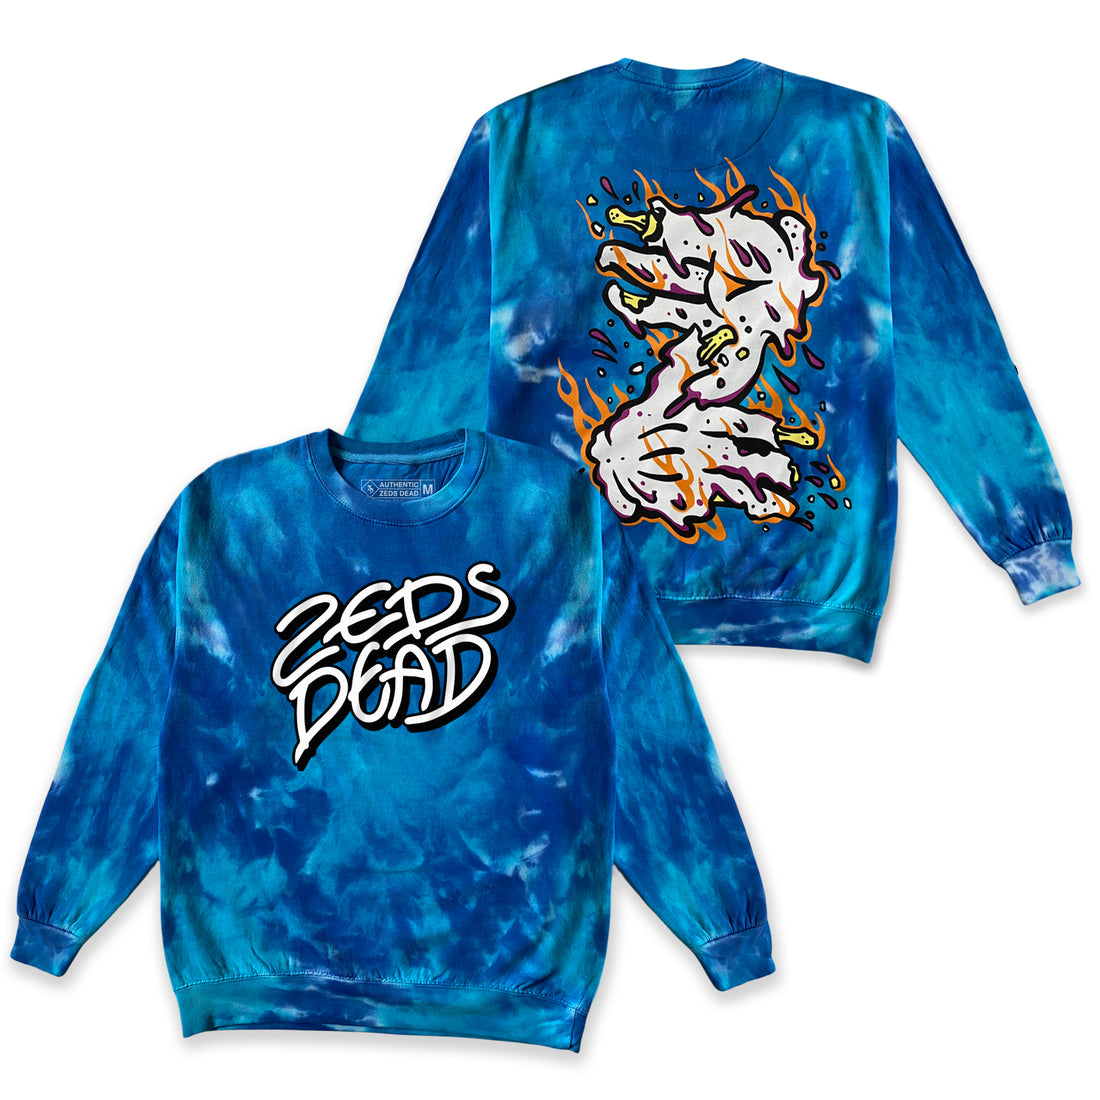 Zeds Dead - Endure - Tie Dye Crew Sweatshirt